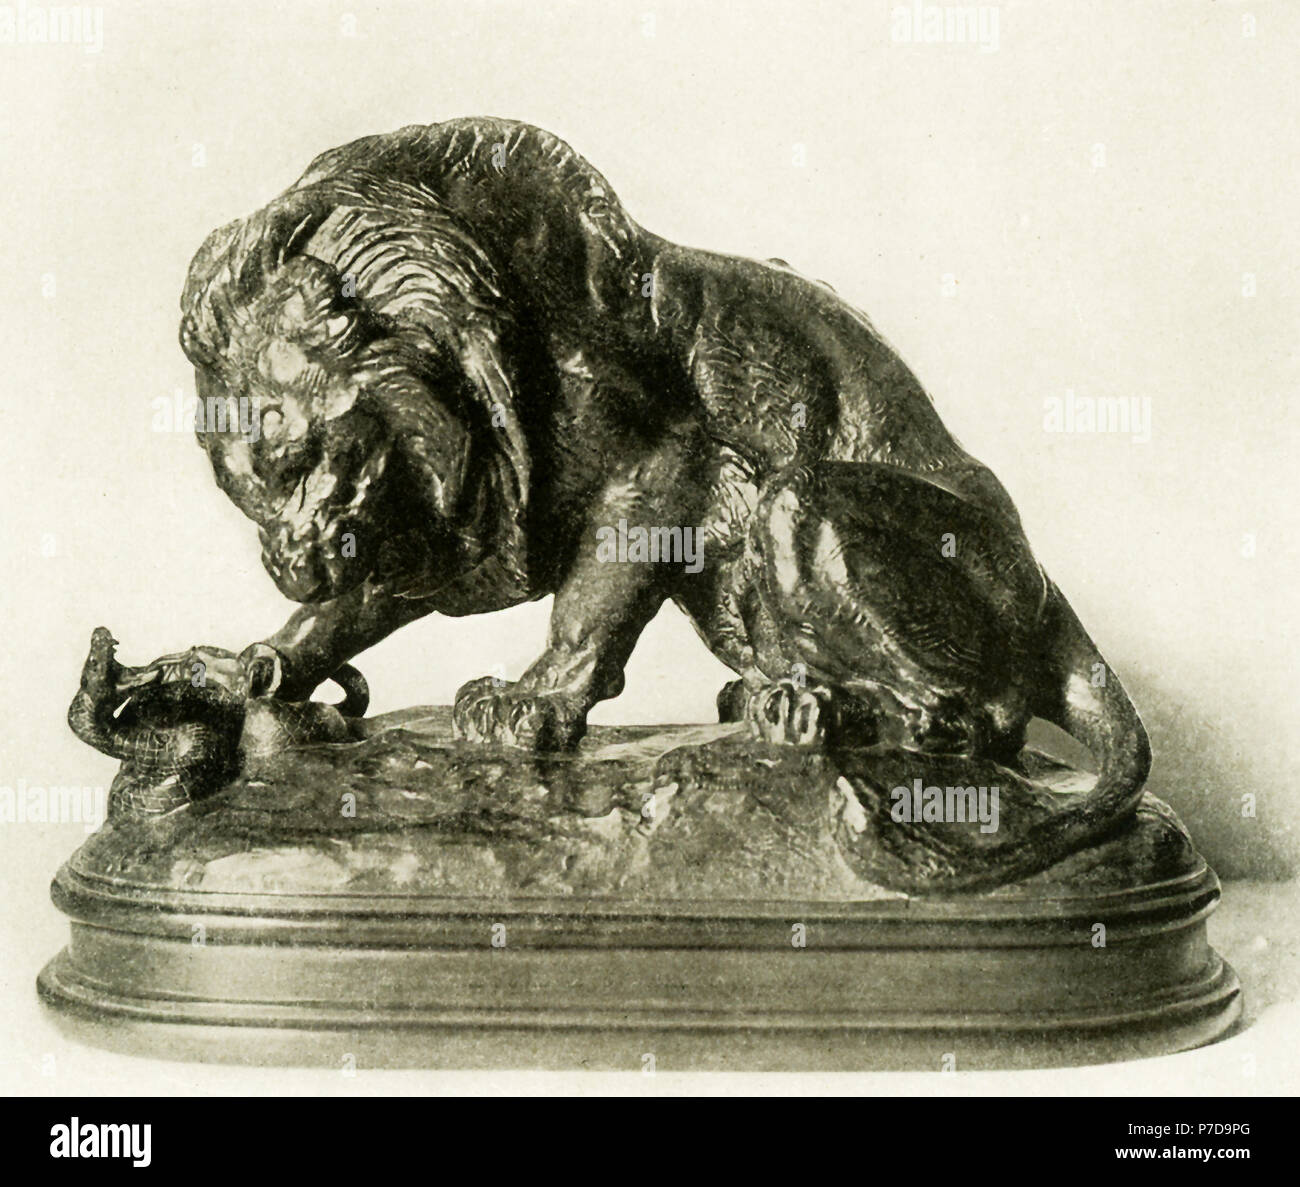 Antoine Louis Barye (1795-1875) était un sculpteur français romantique. Il  est surtout connu comme un sculpteur d'animaux (par conséquent, un animalier).  Cette sculpture en bronze de Barye est intitulé "Le Lion et